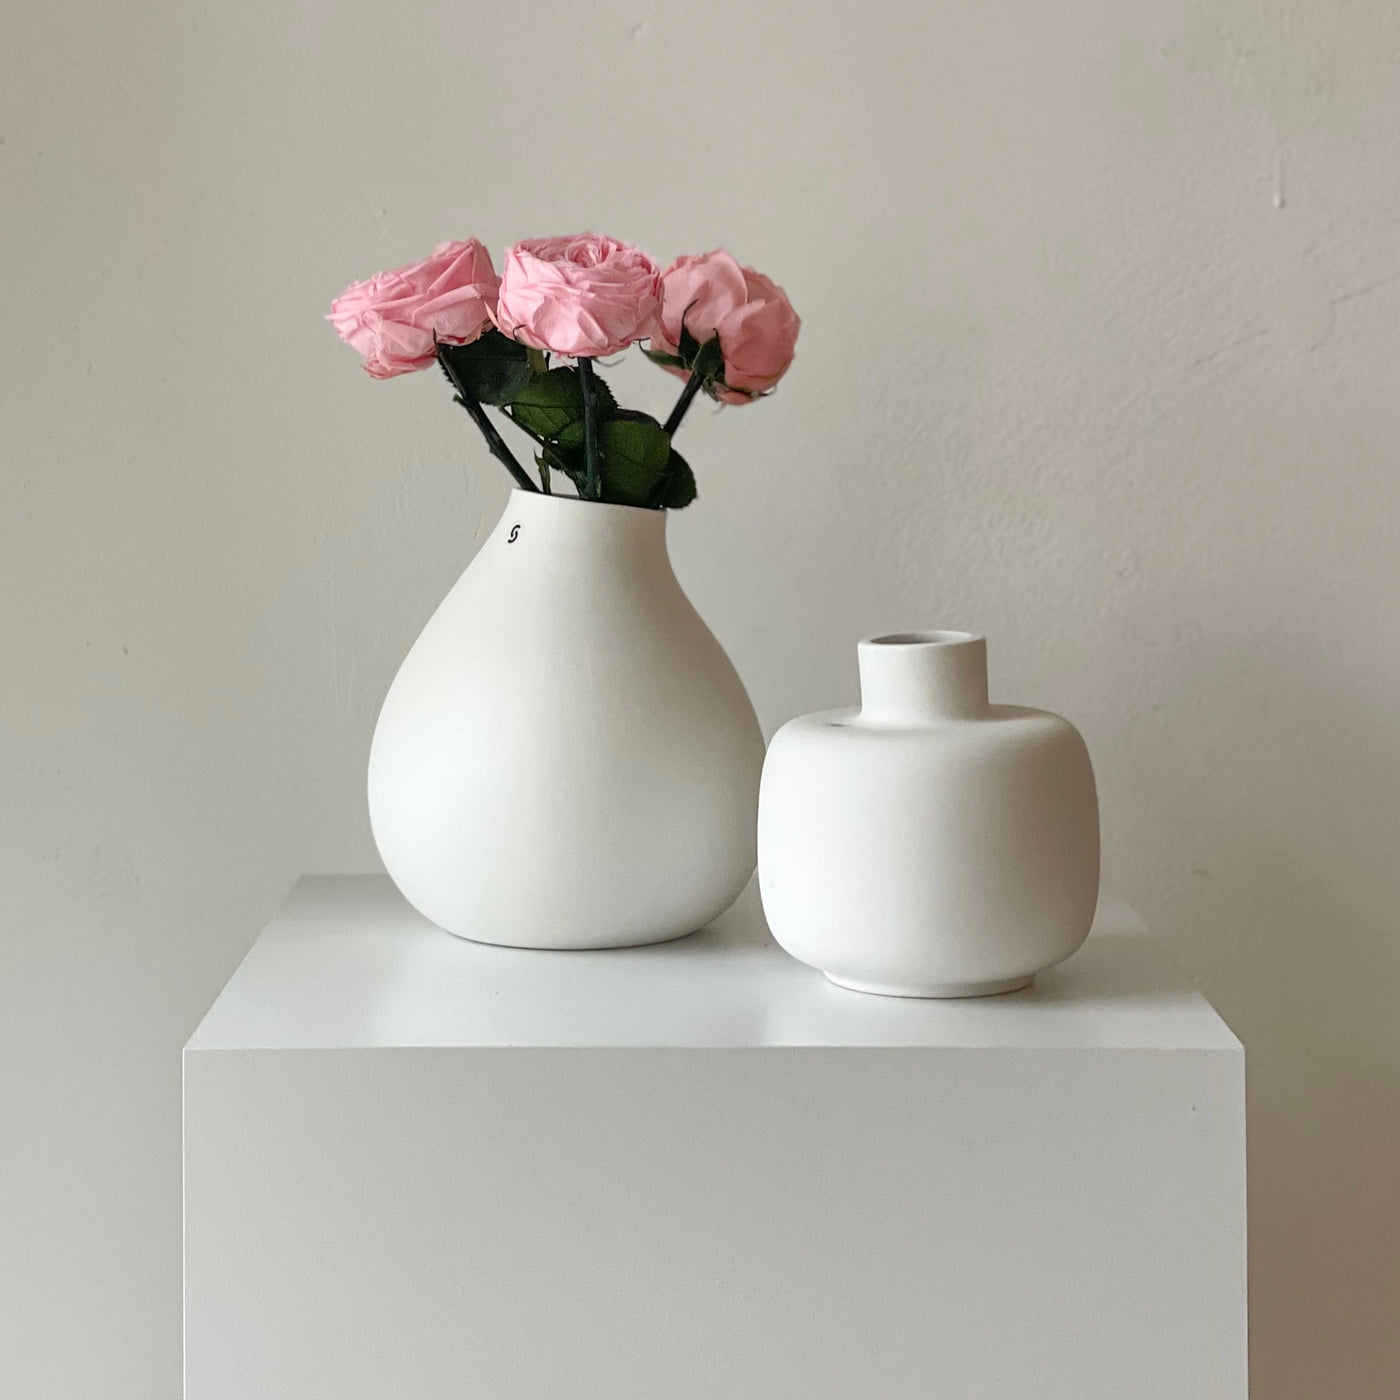 Konservierte englische Rose | 30 cm | weiss | rosa | edel | haltbar - Größe: 3x - Farbe: rosa